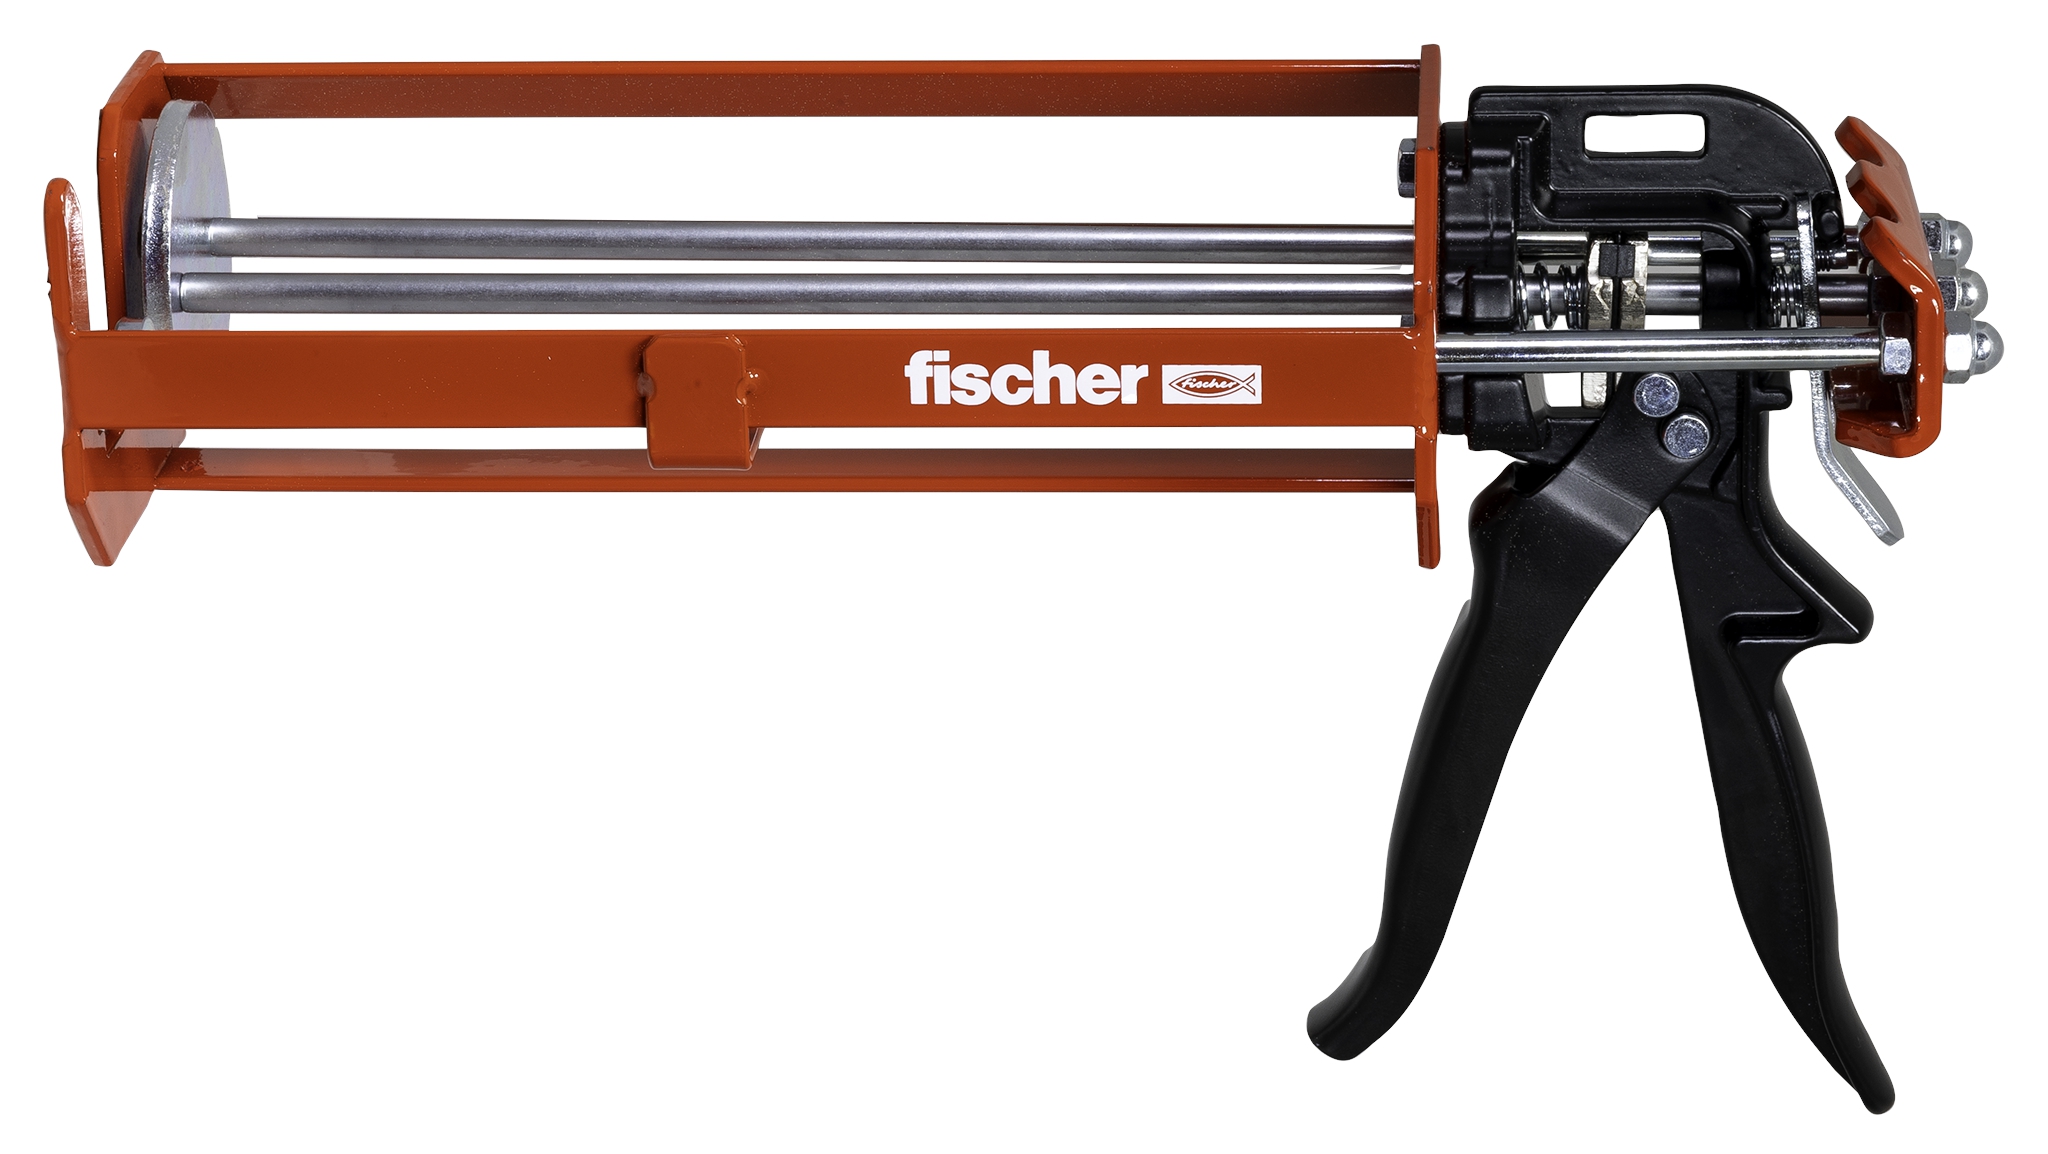 Fischer FIS AM S-XL. Das Handauspressgerät für die 825ml Injektionskartusche.